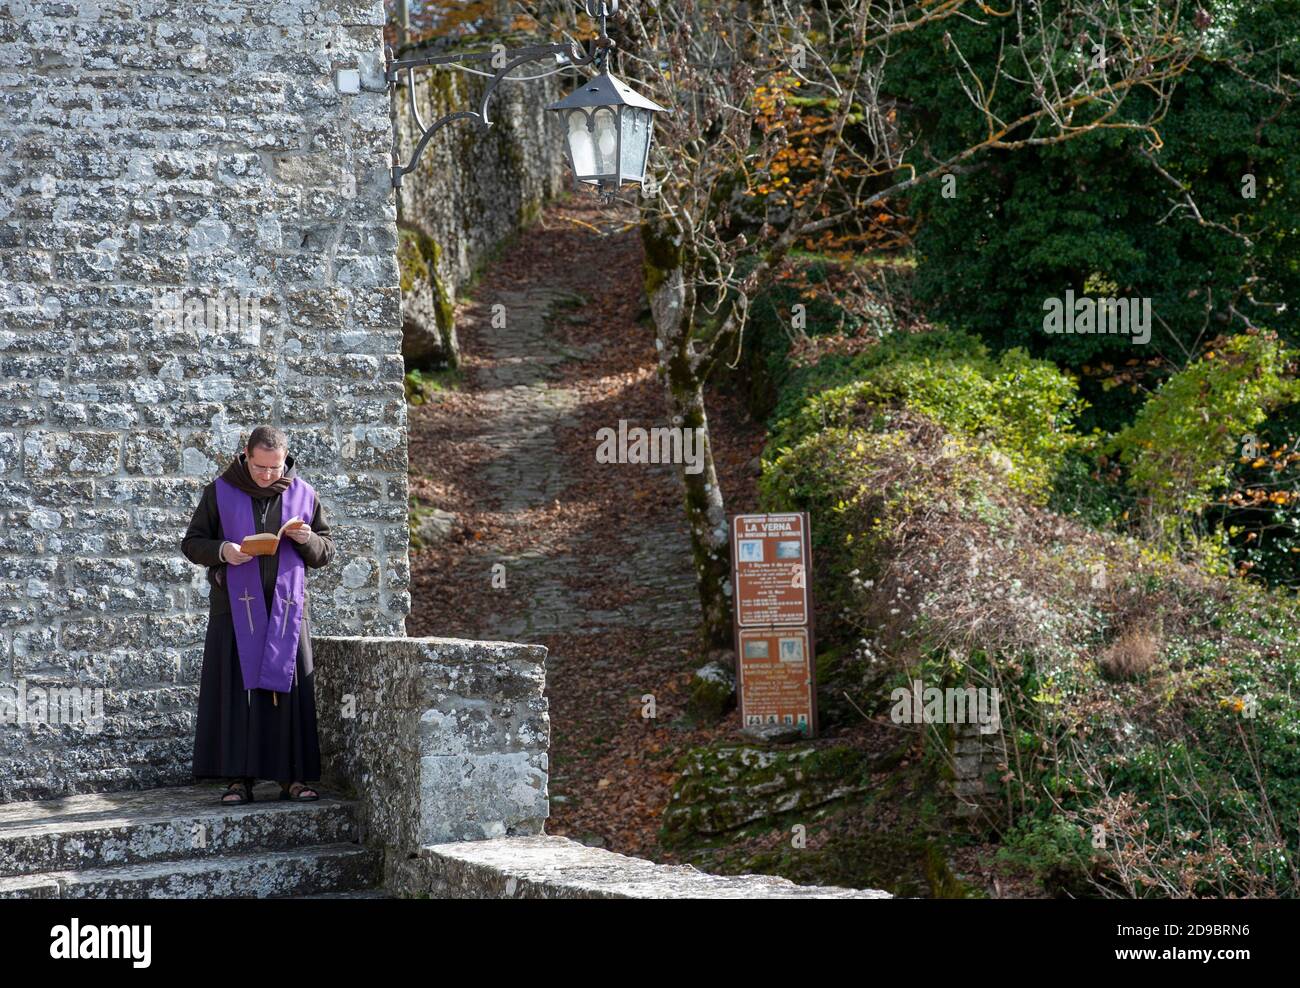 Chiusi della Verna, Arezzo, Italy - 2020, October 30:  Monk in prayer near the abbey church. Stock Photo